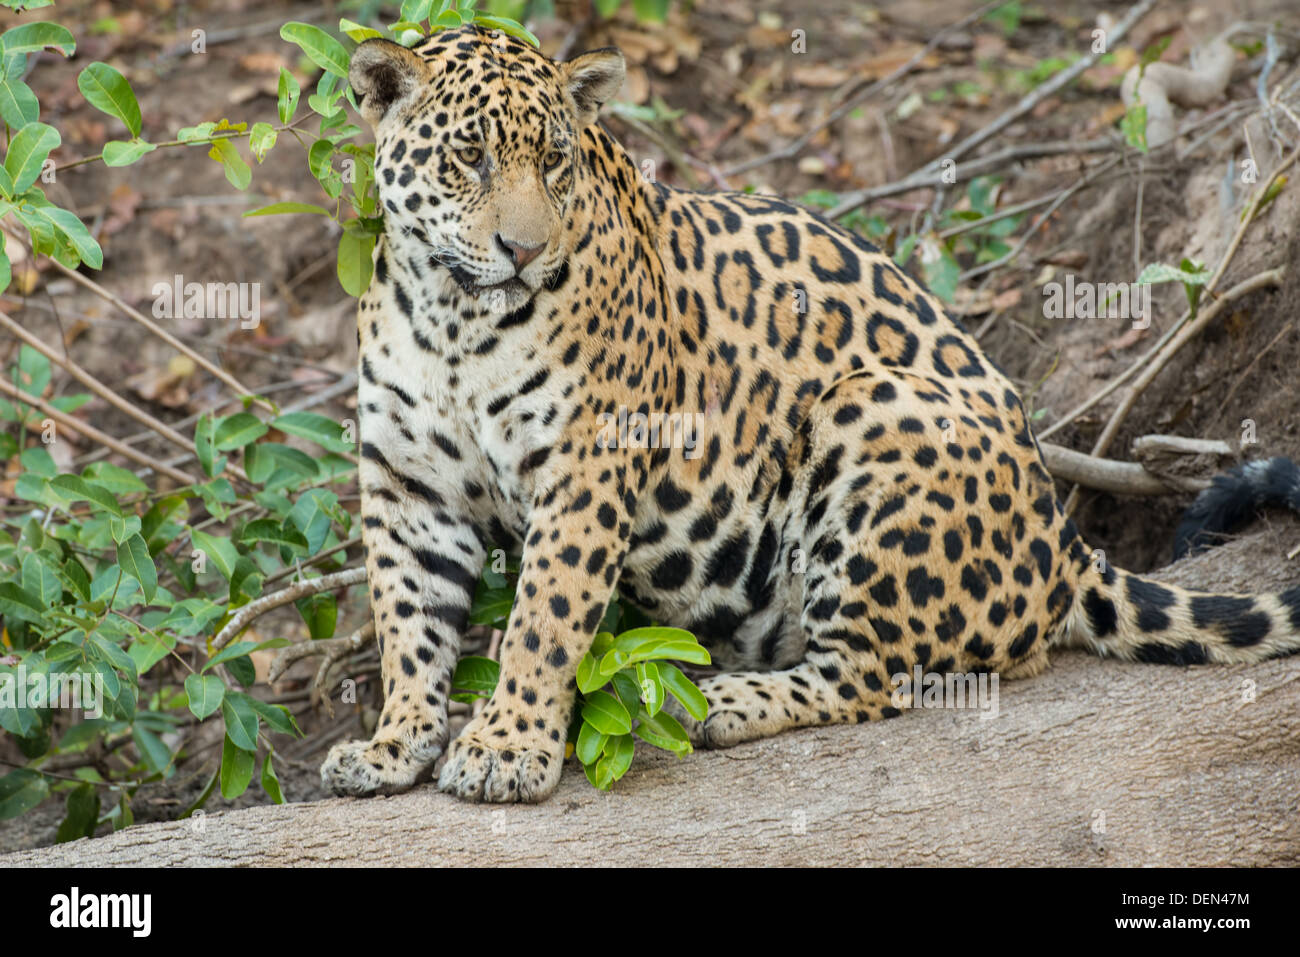 Stock Foto von einem Jaguar sitzen auf einem Baumstamm, Pantanal, Brasilien. Stockfoto